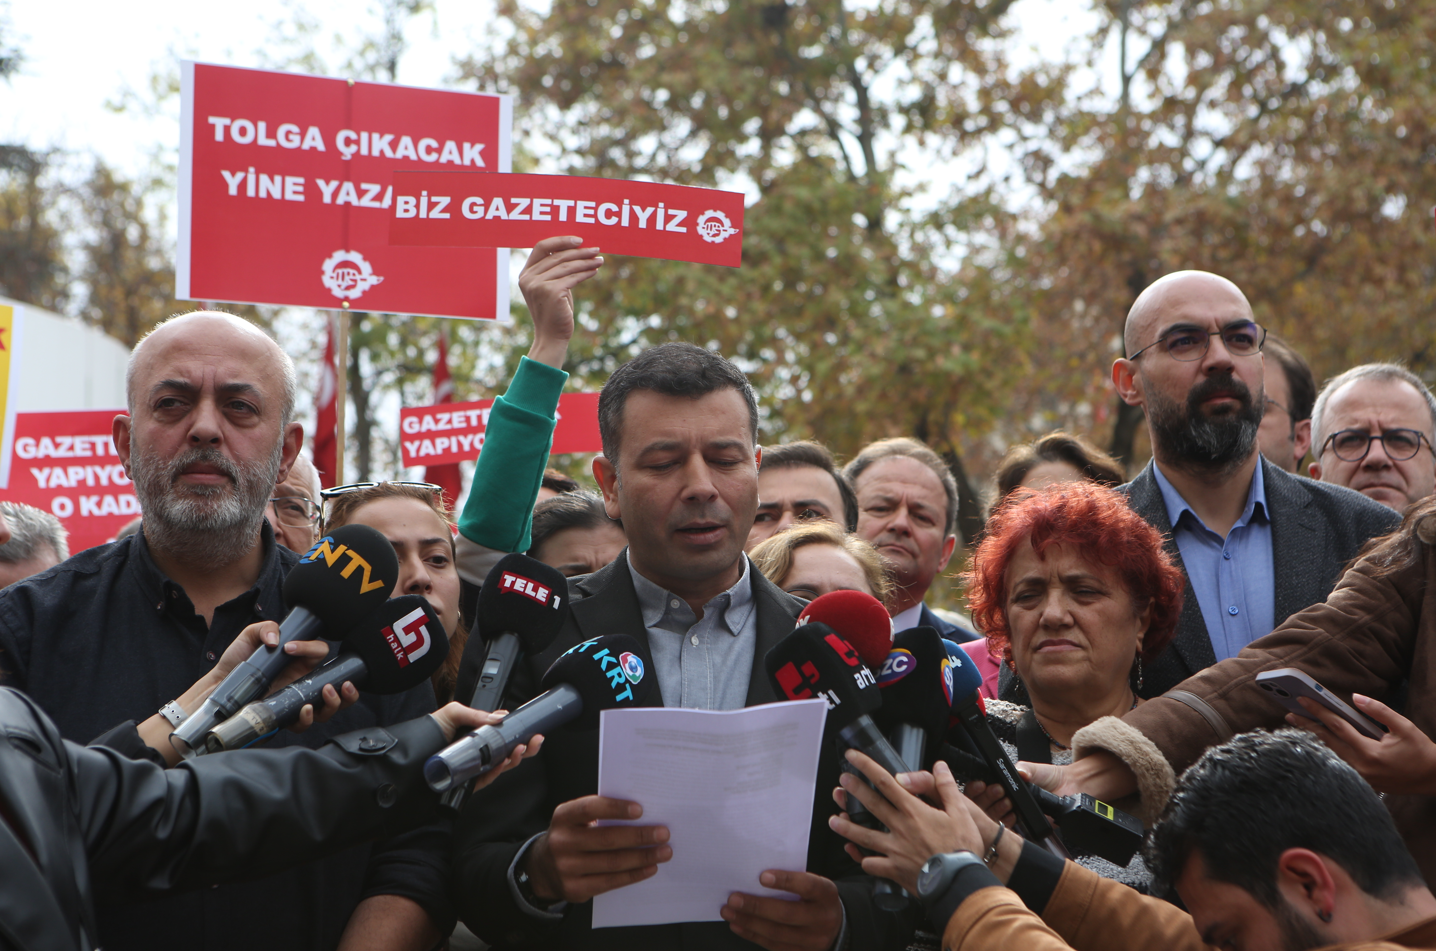 Gazeteciler Tolga Şardan için seslendi: 'Tolga çıkacak yine yazacak!'